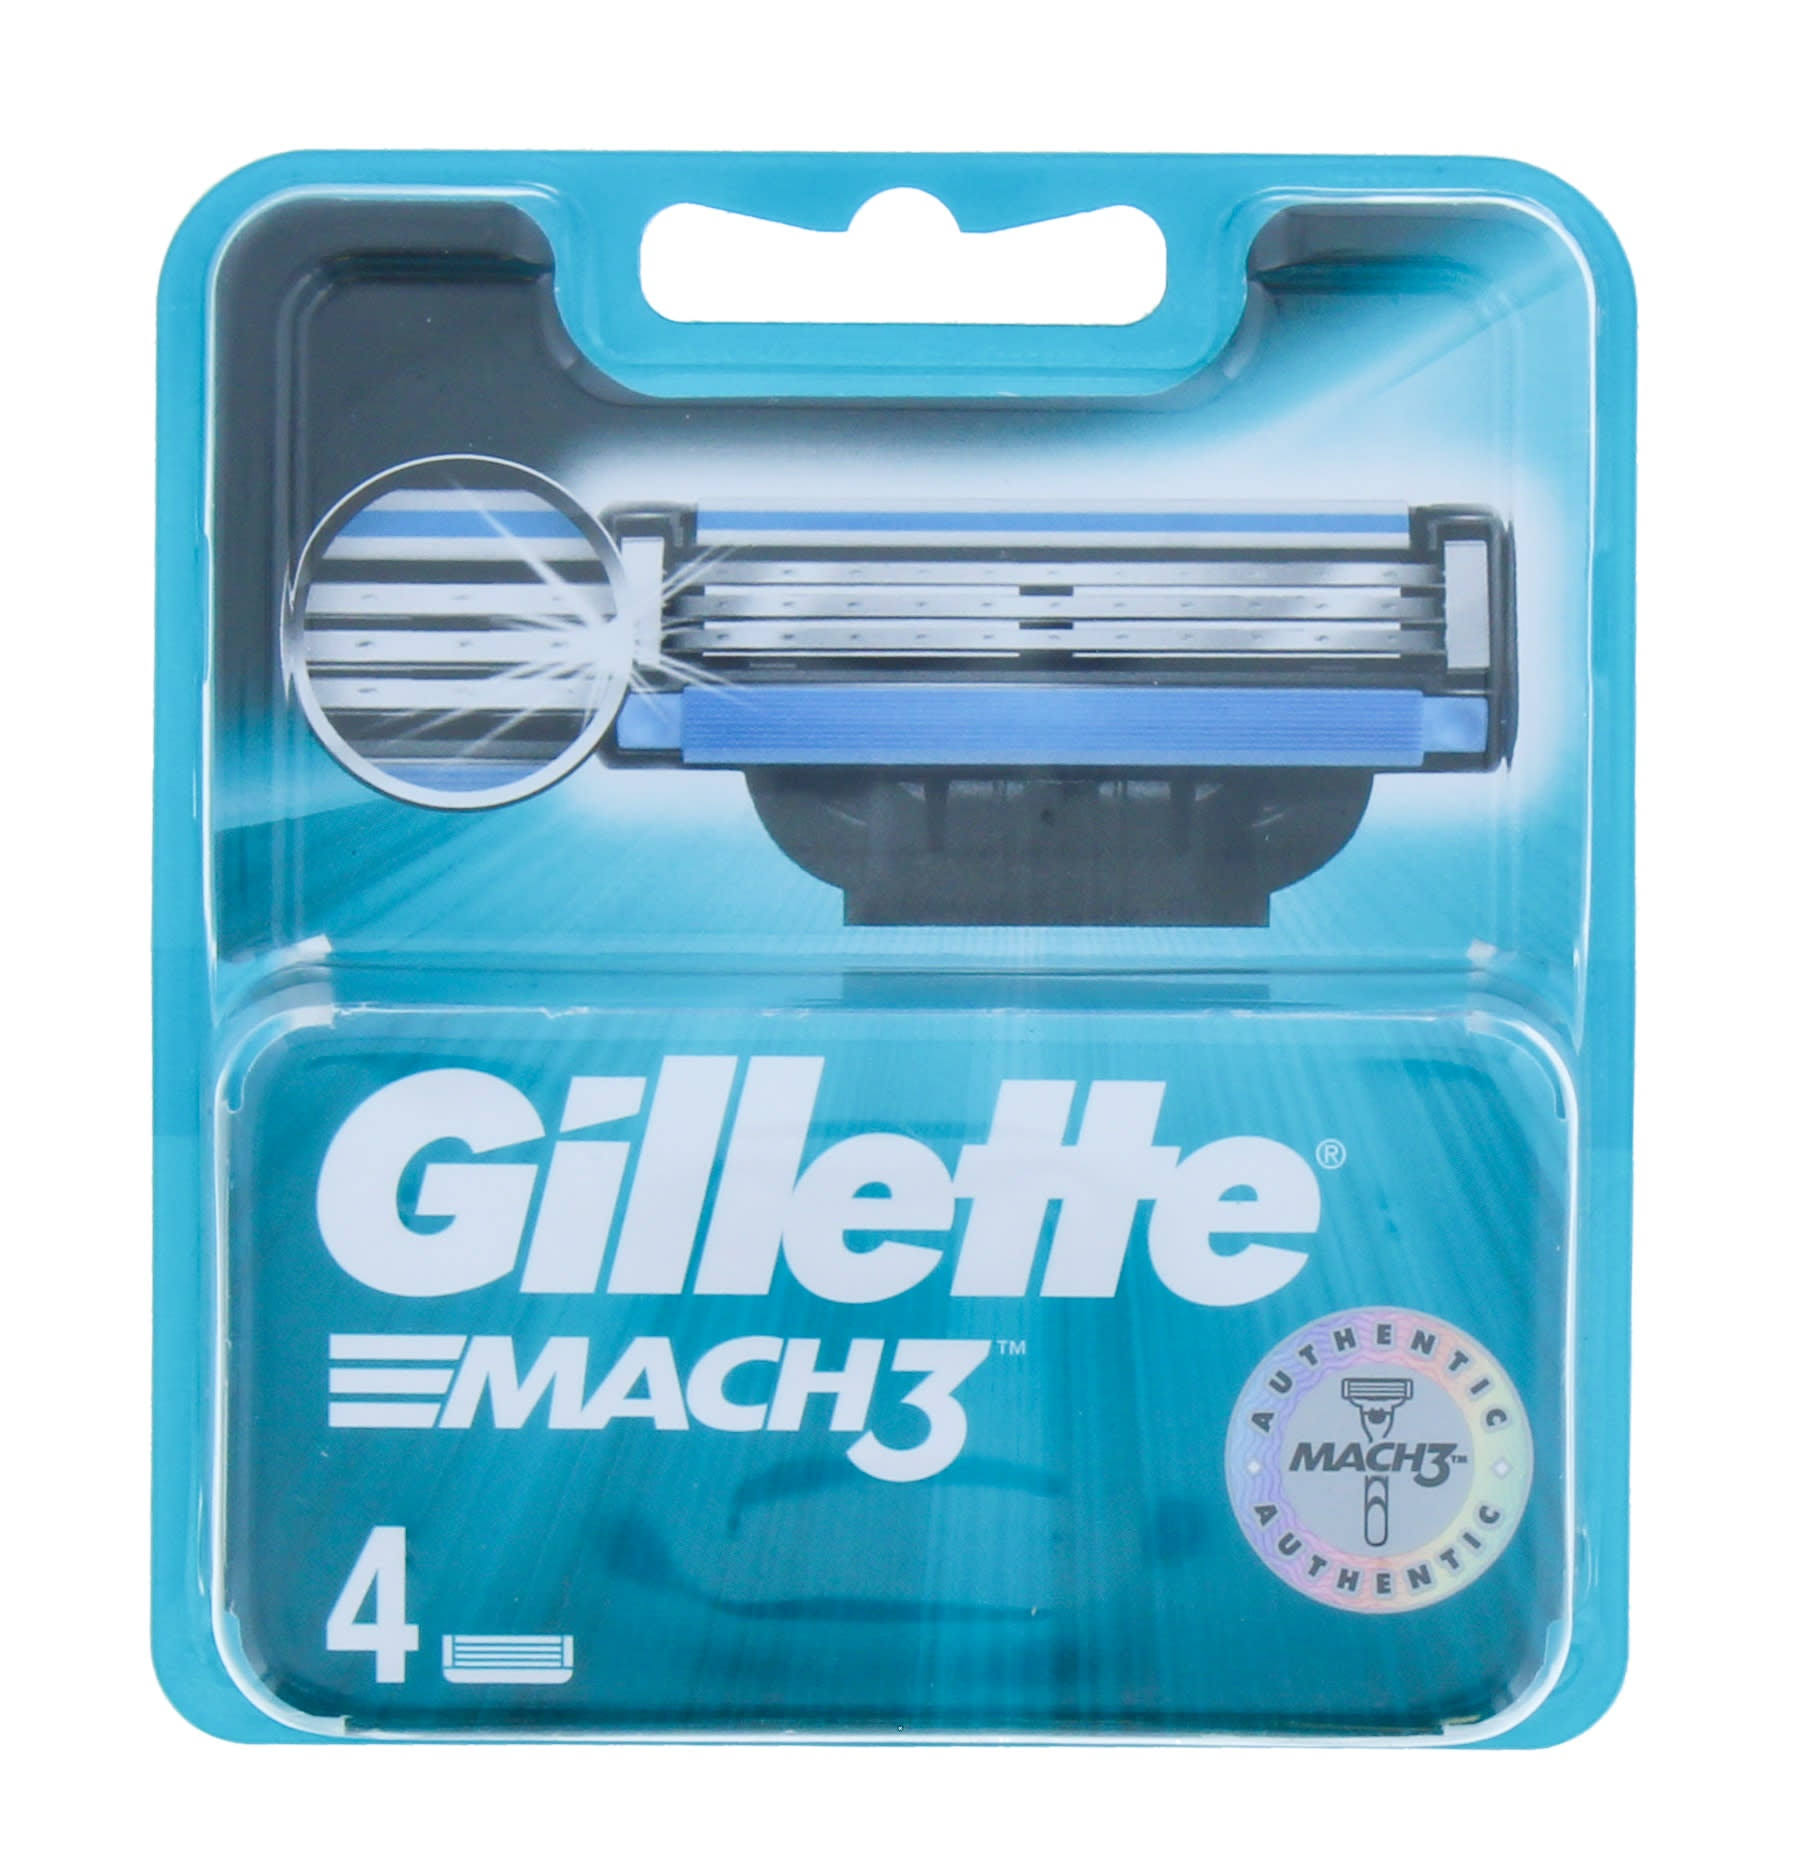 Gillette Mach3 Razor Blades - 4pk